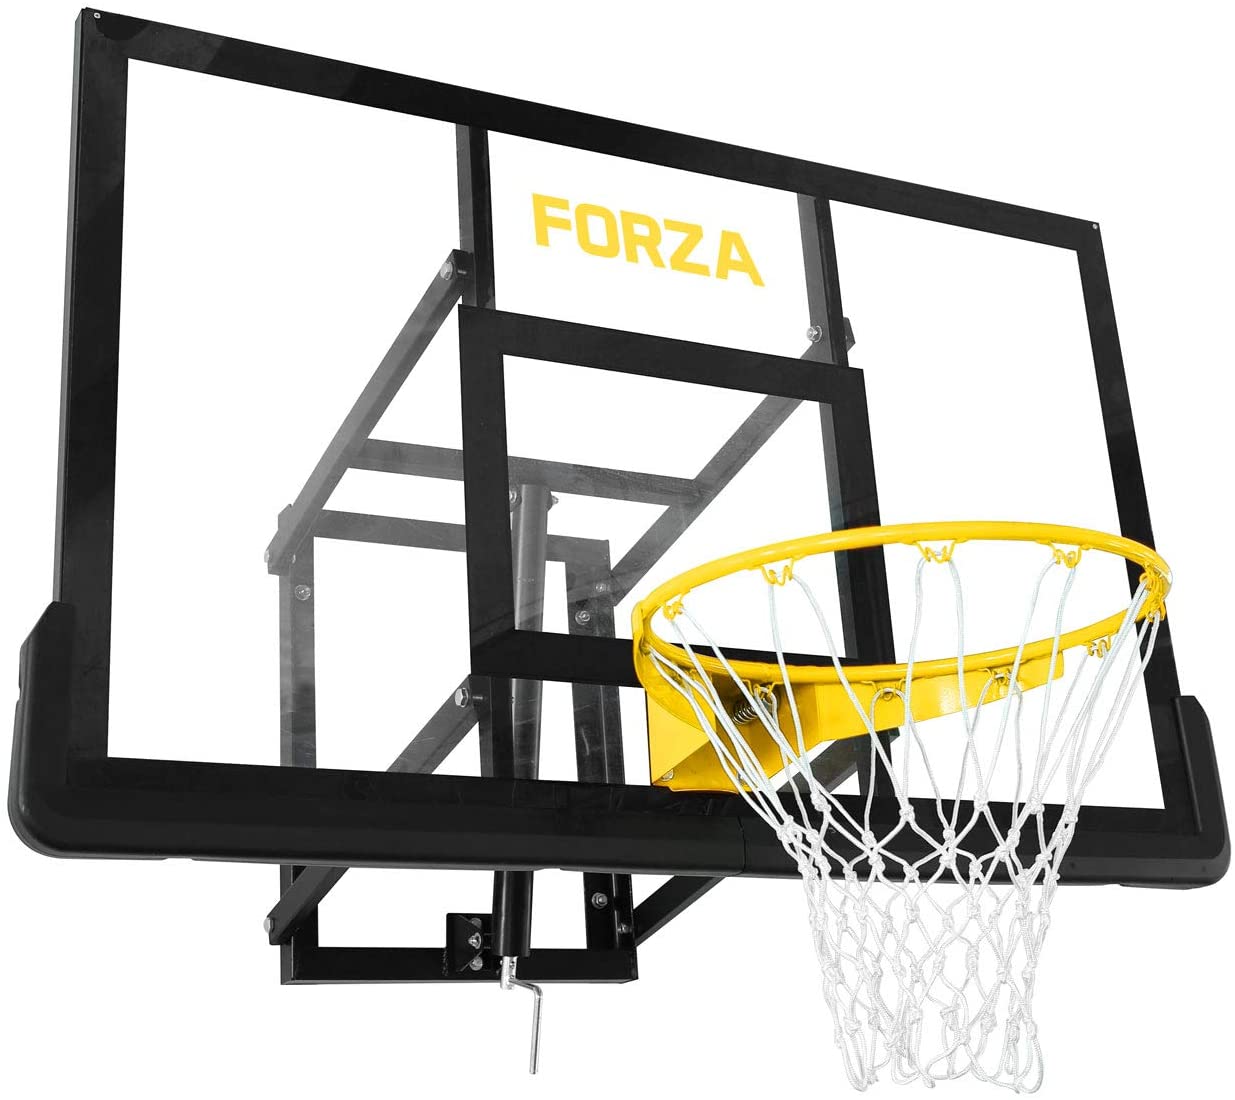 FORZA Wall Mounted Basketball Hoop